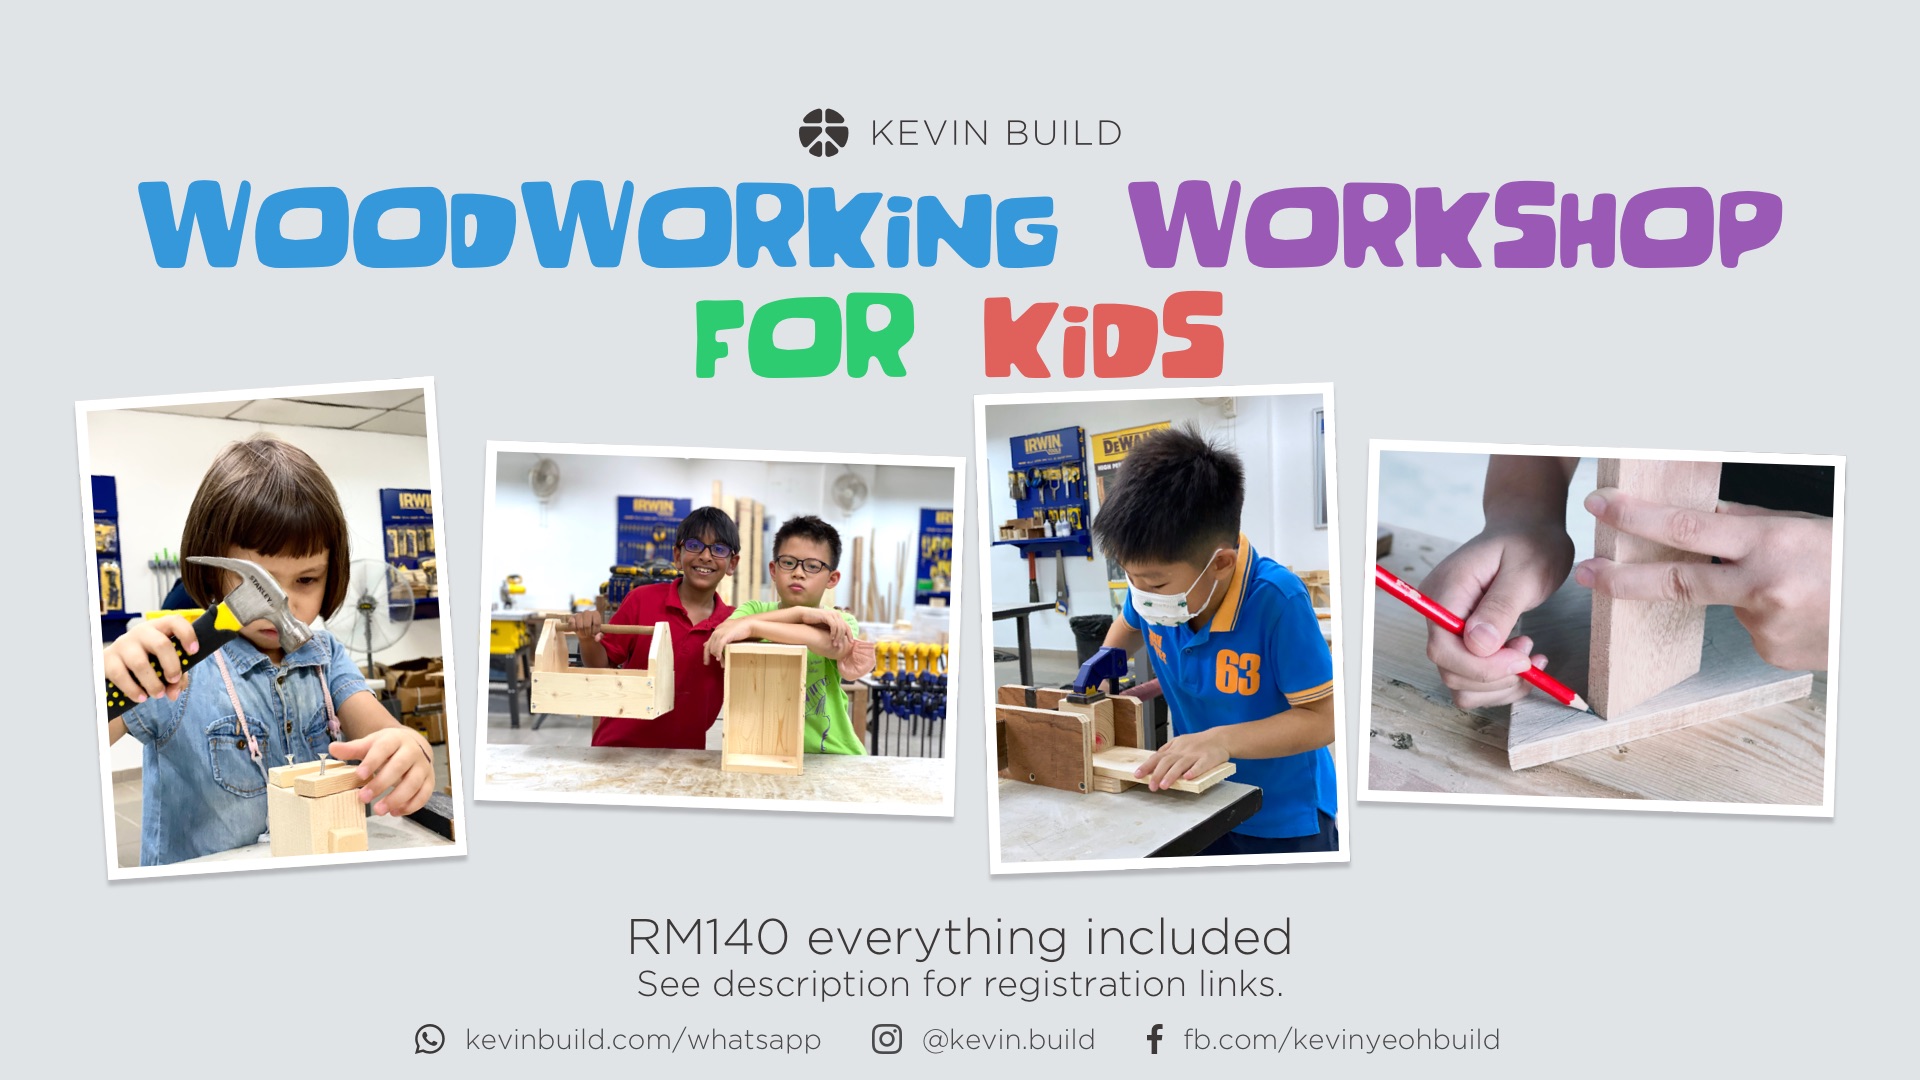 Woodworking Workshop For Kids poster